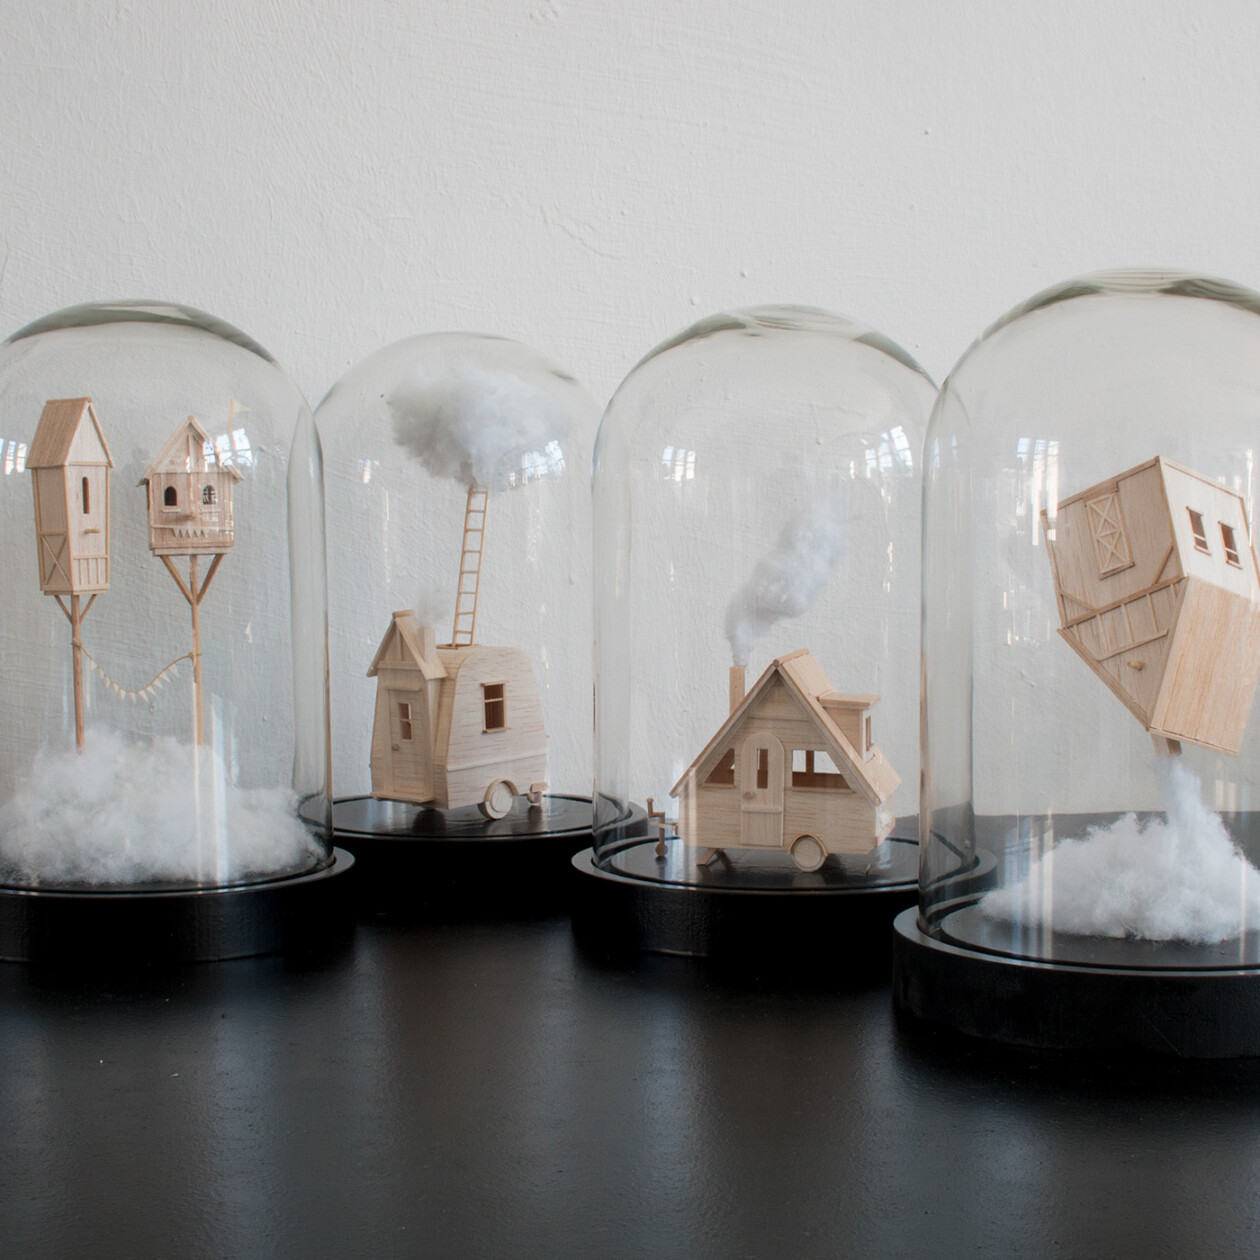 Enchanting Miniature Sculptures Made From Balsa Wood By Vera Van Wolferen (2)